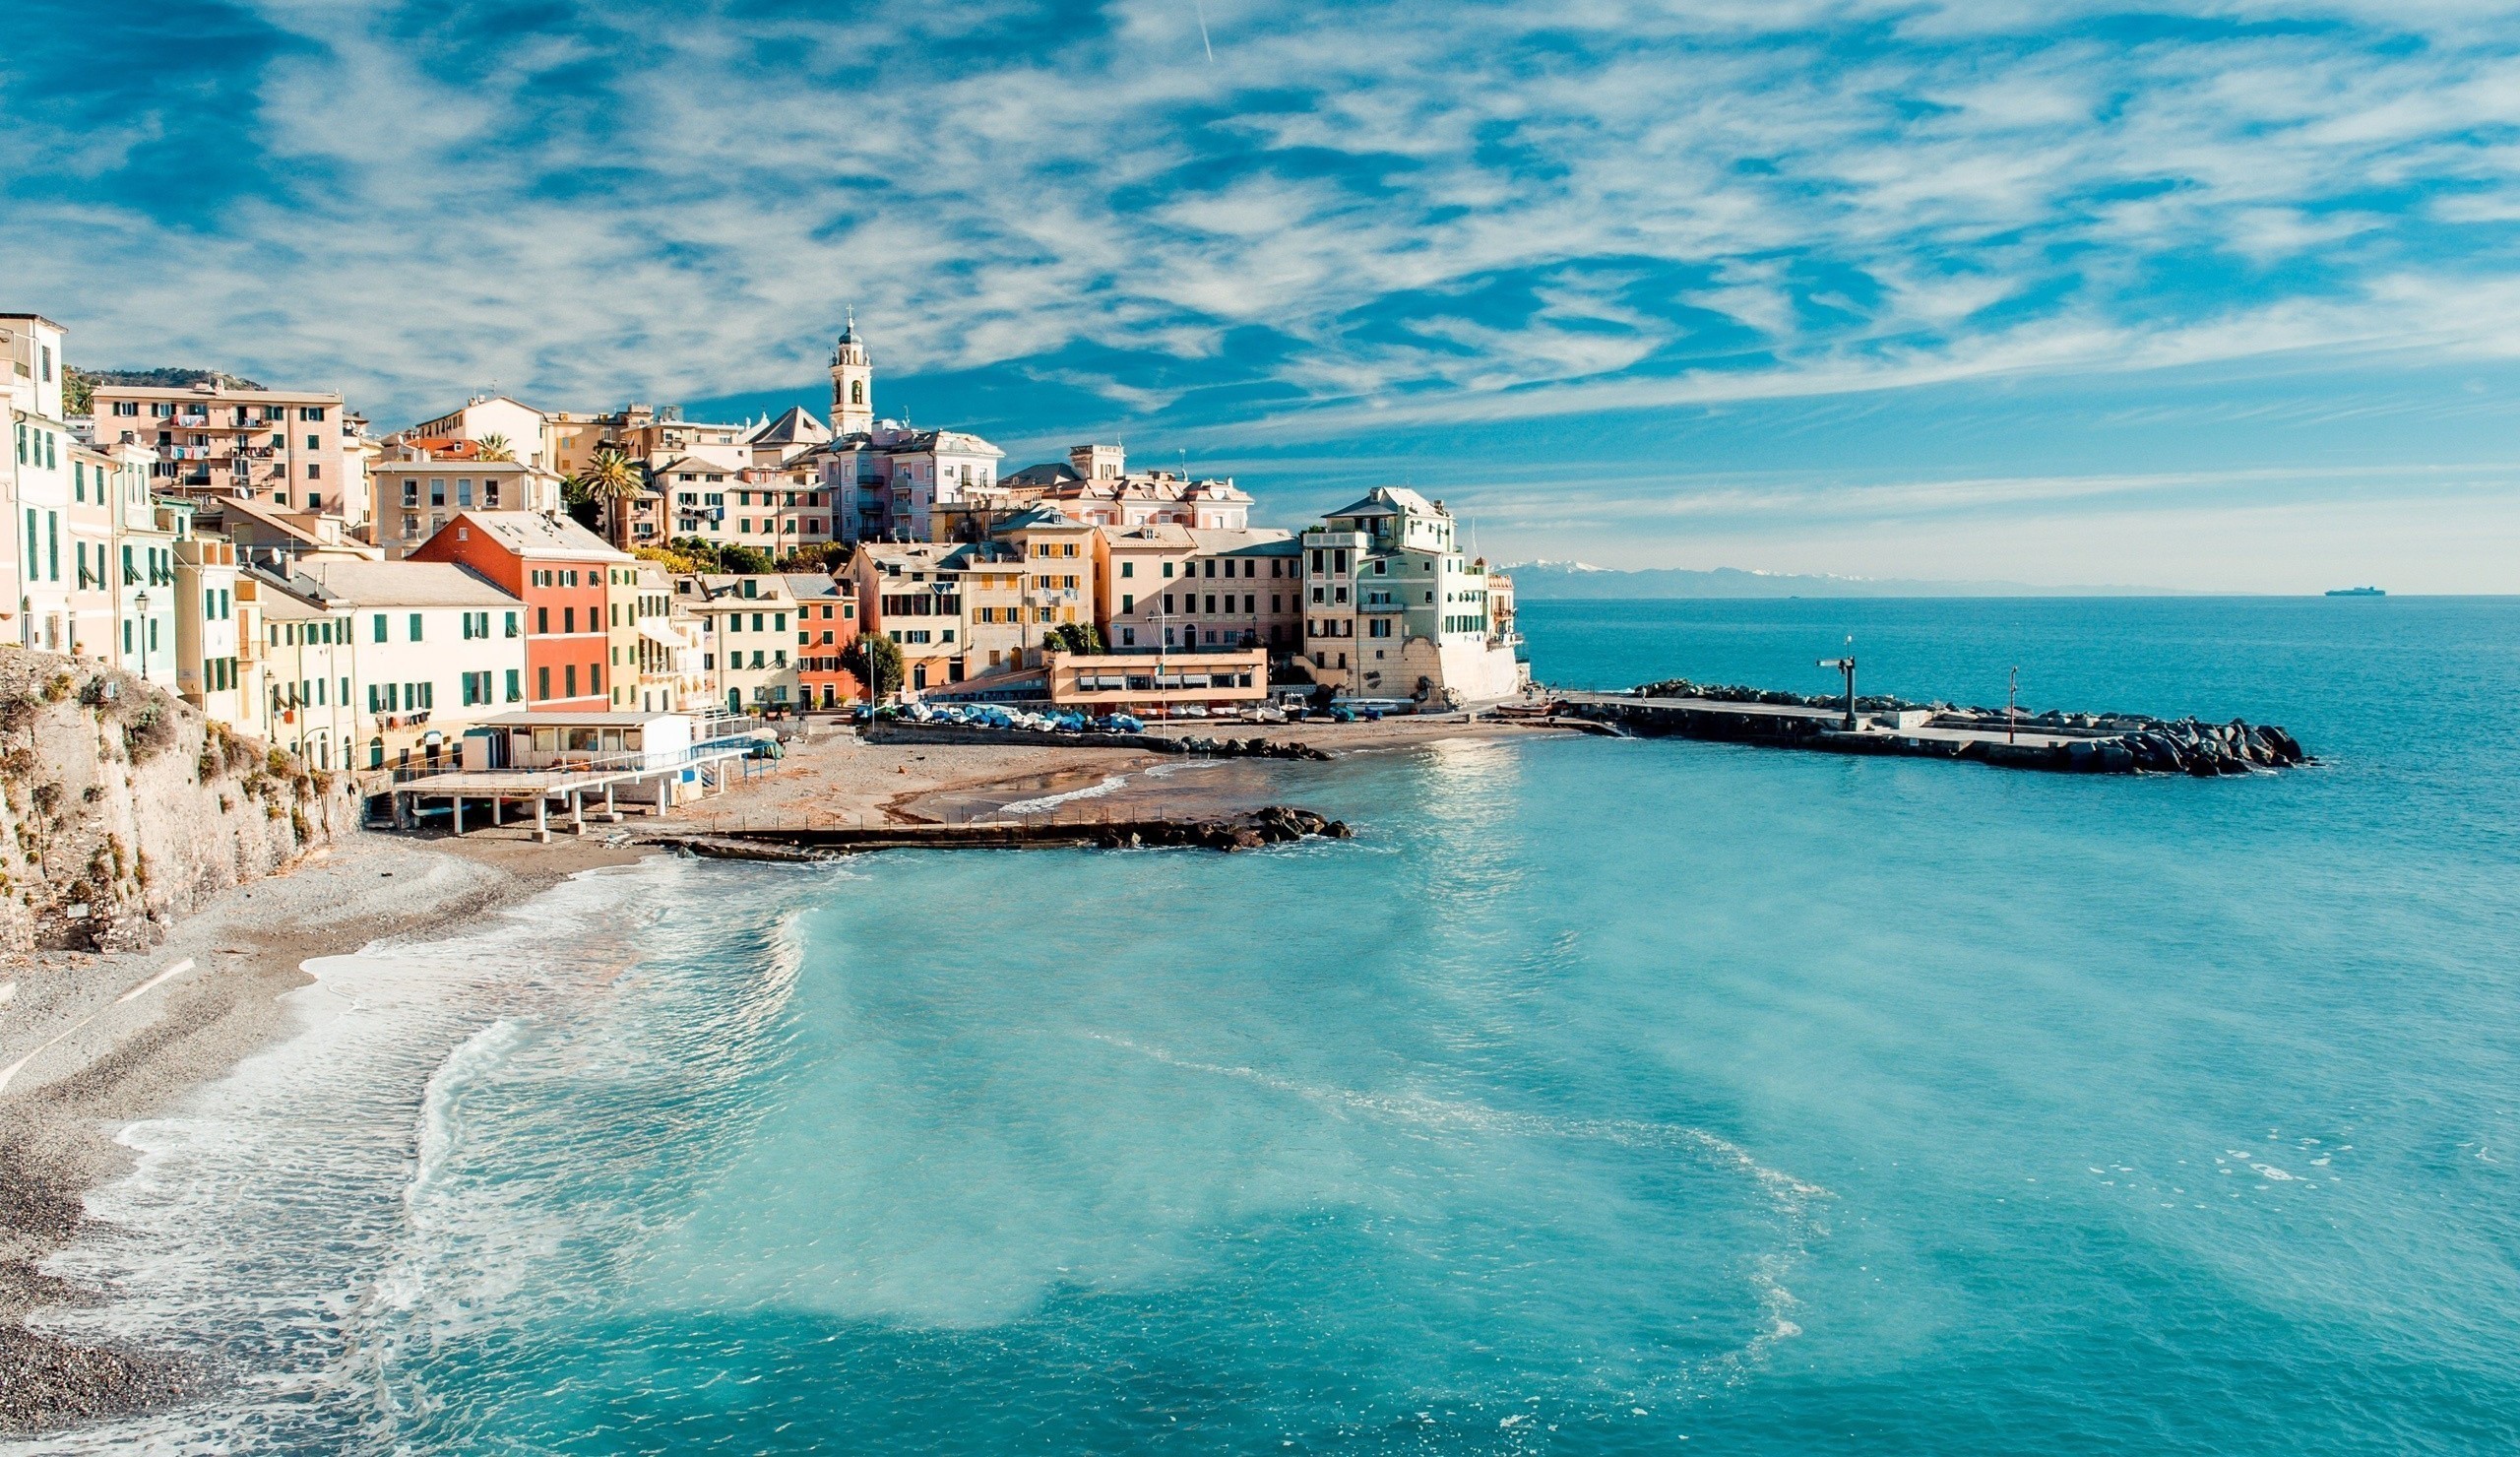 Cinque Terre , HD Wallpaper & Backgrounds